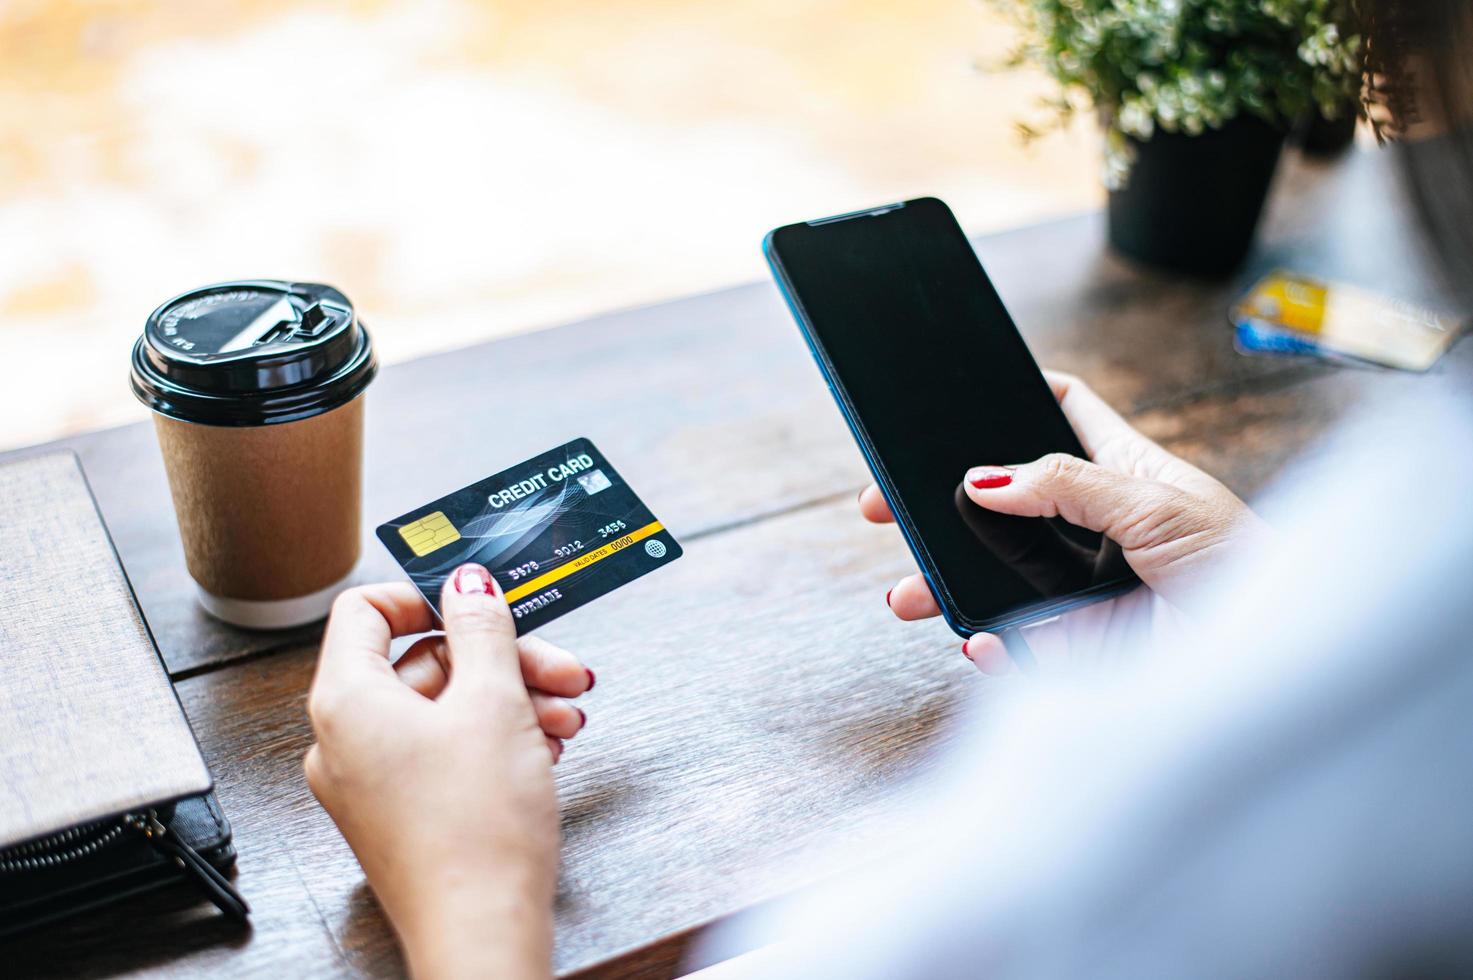 betaling voor goederen met creditcard via smartphone foto